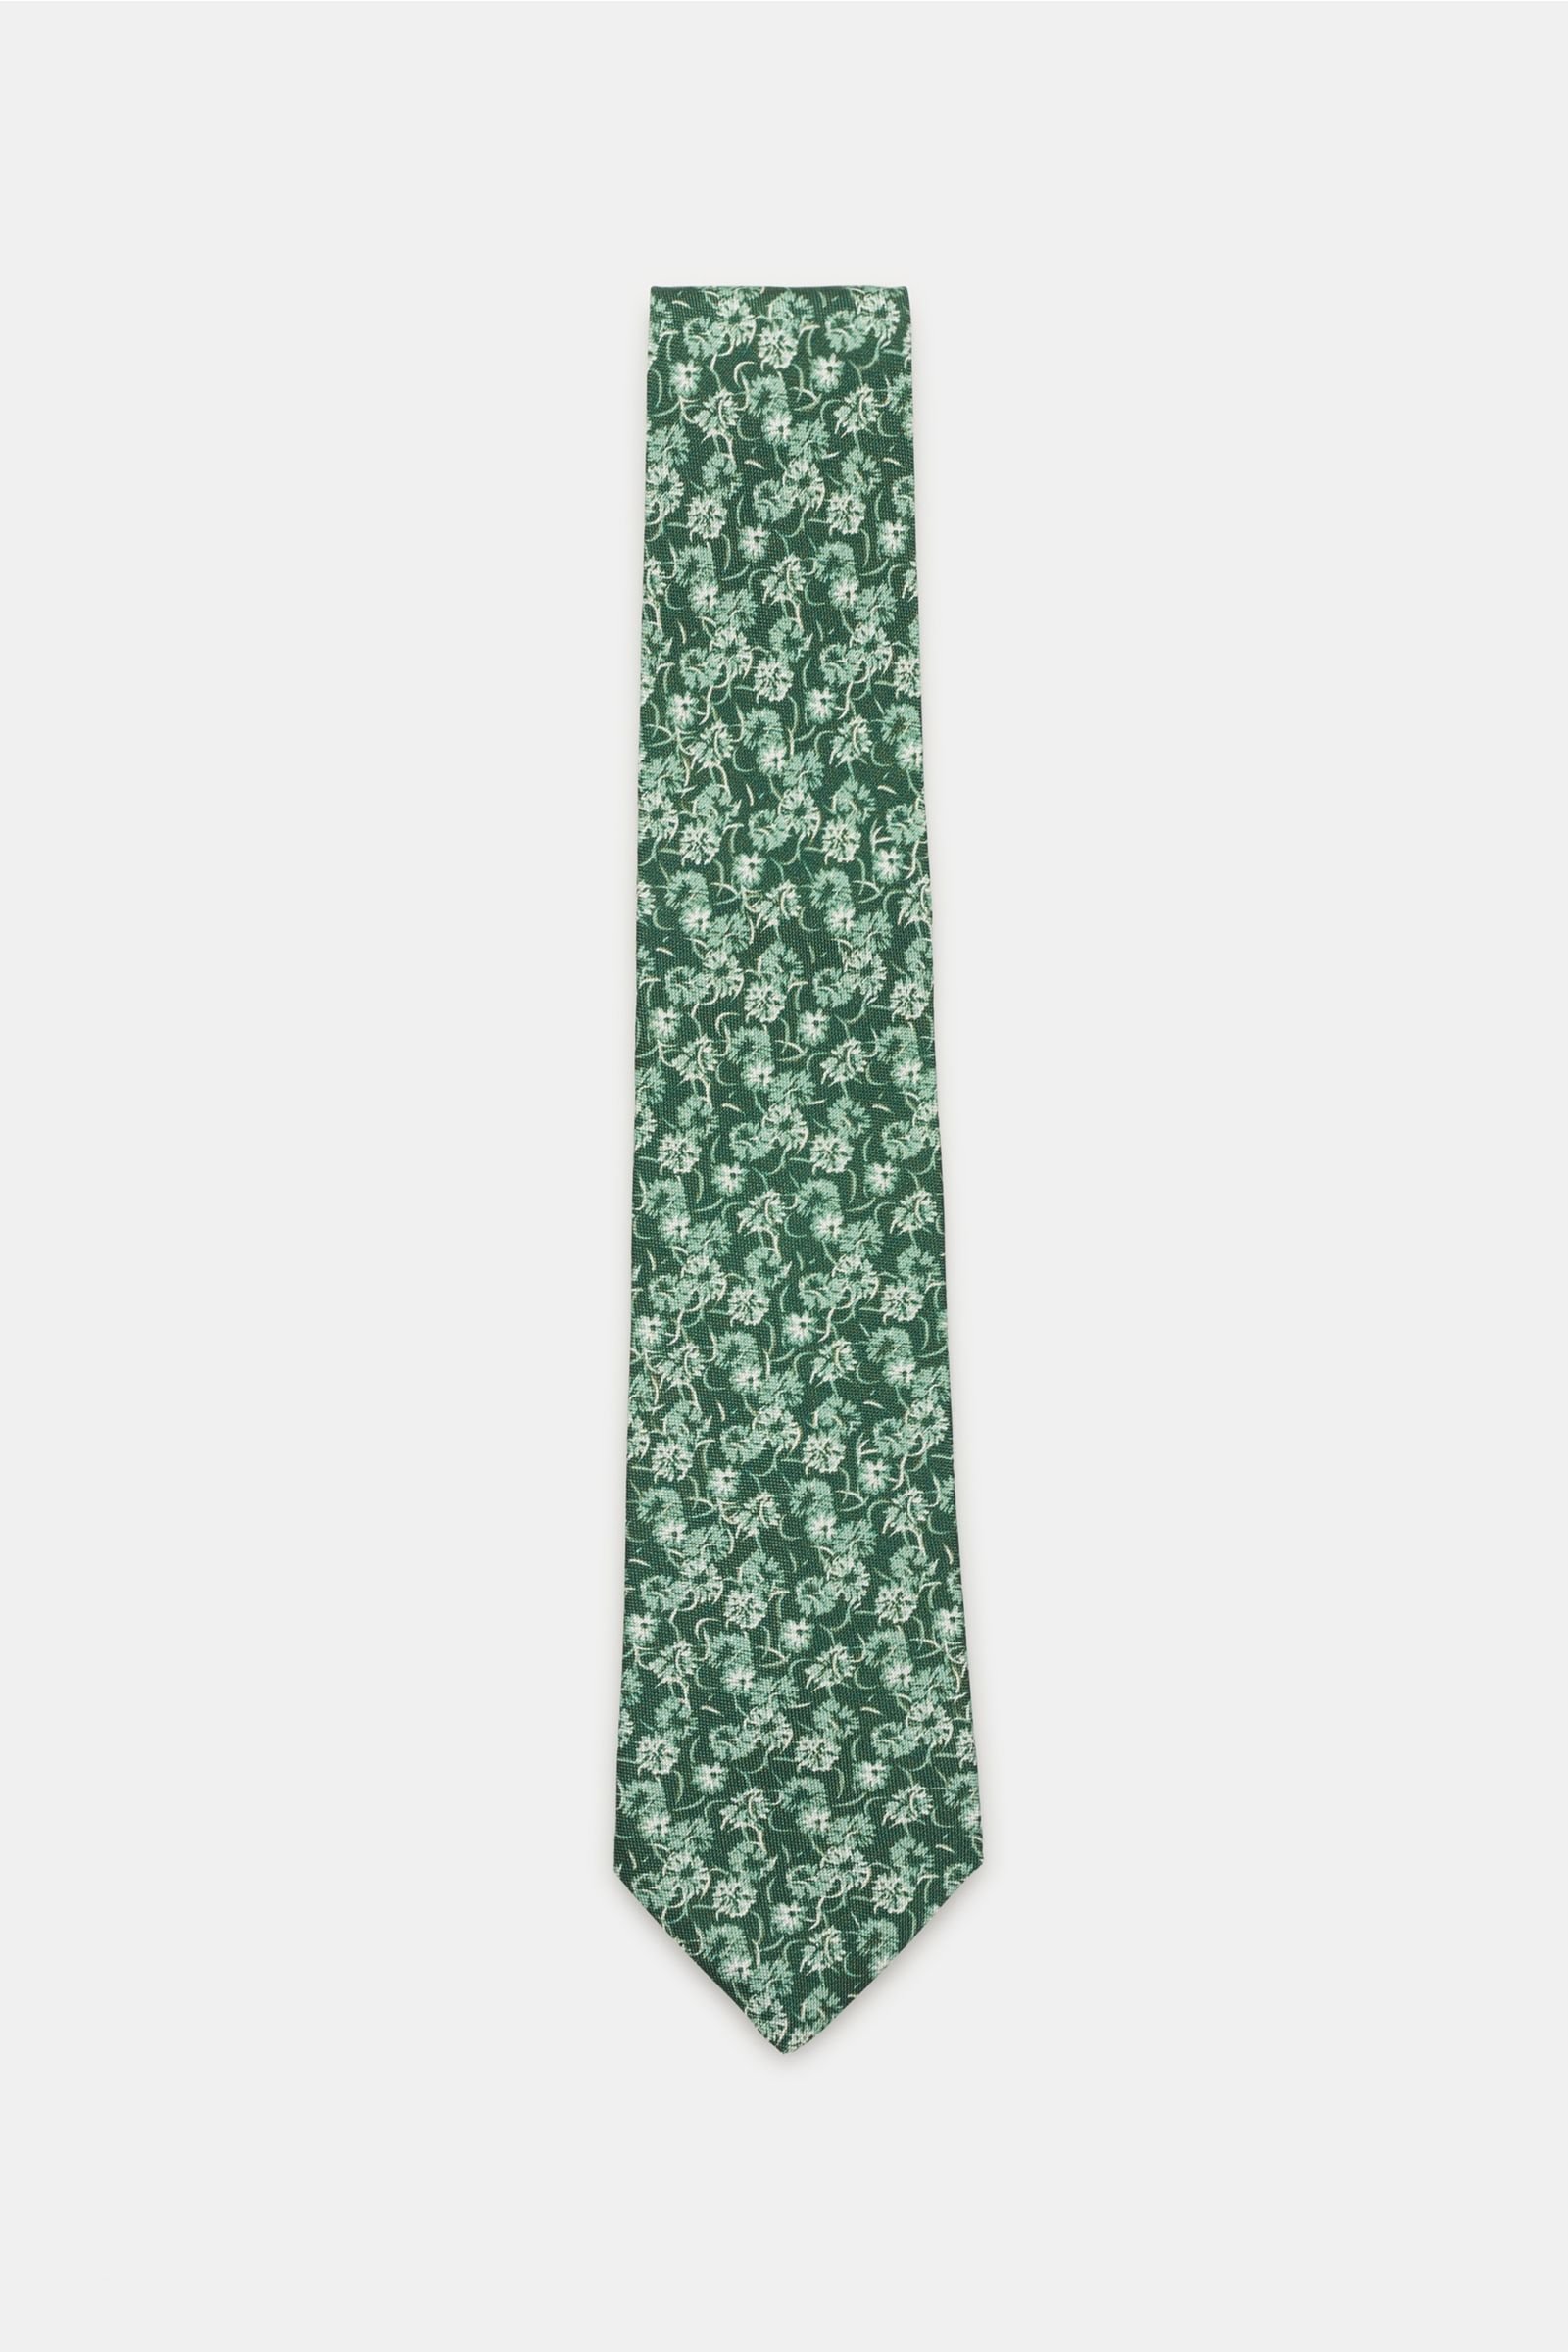 Silk tie green patterned